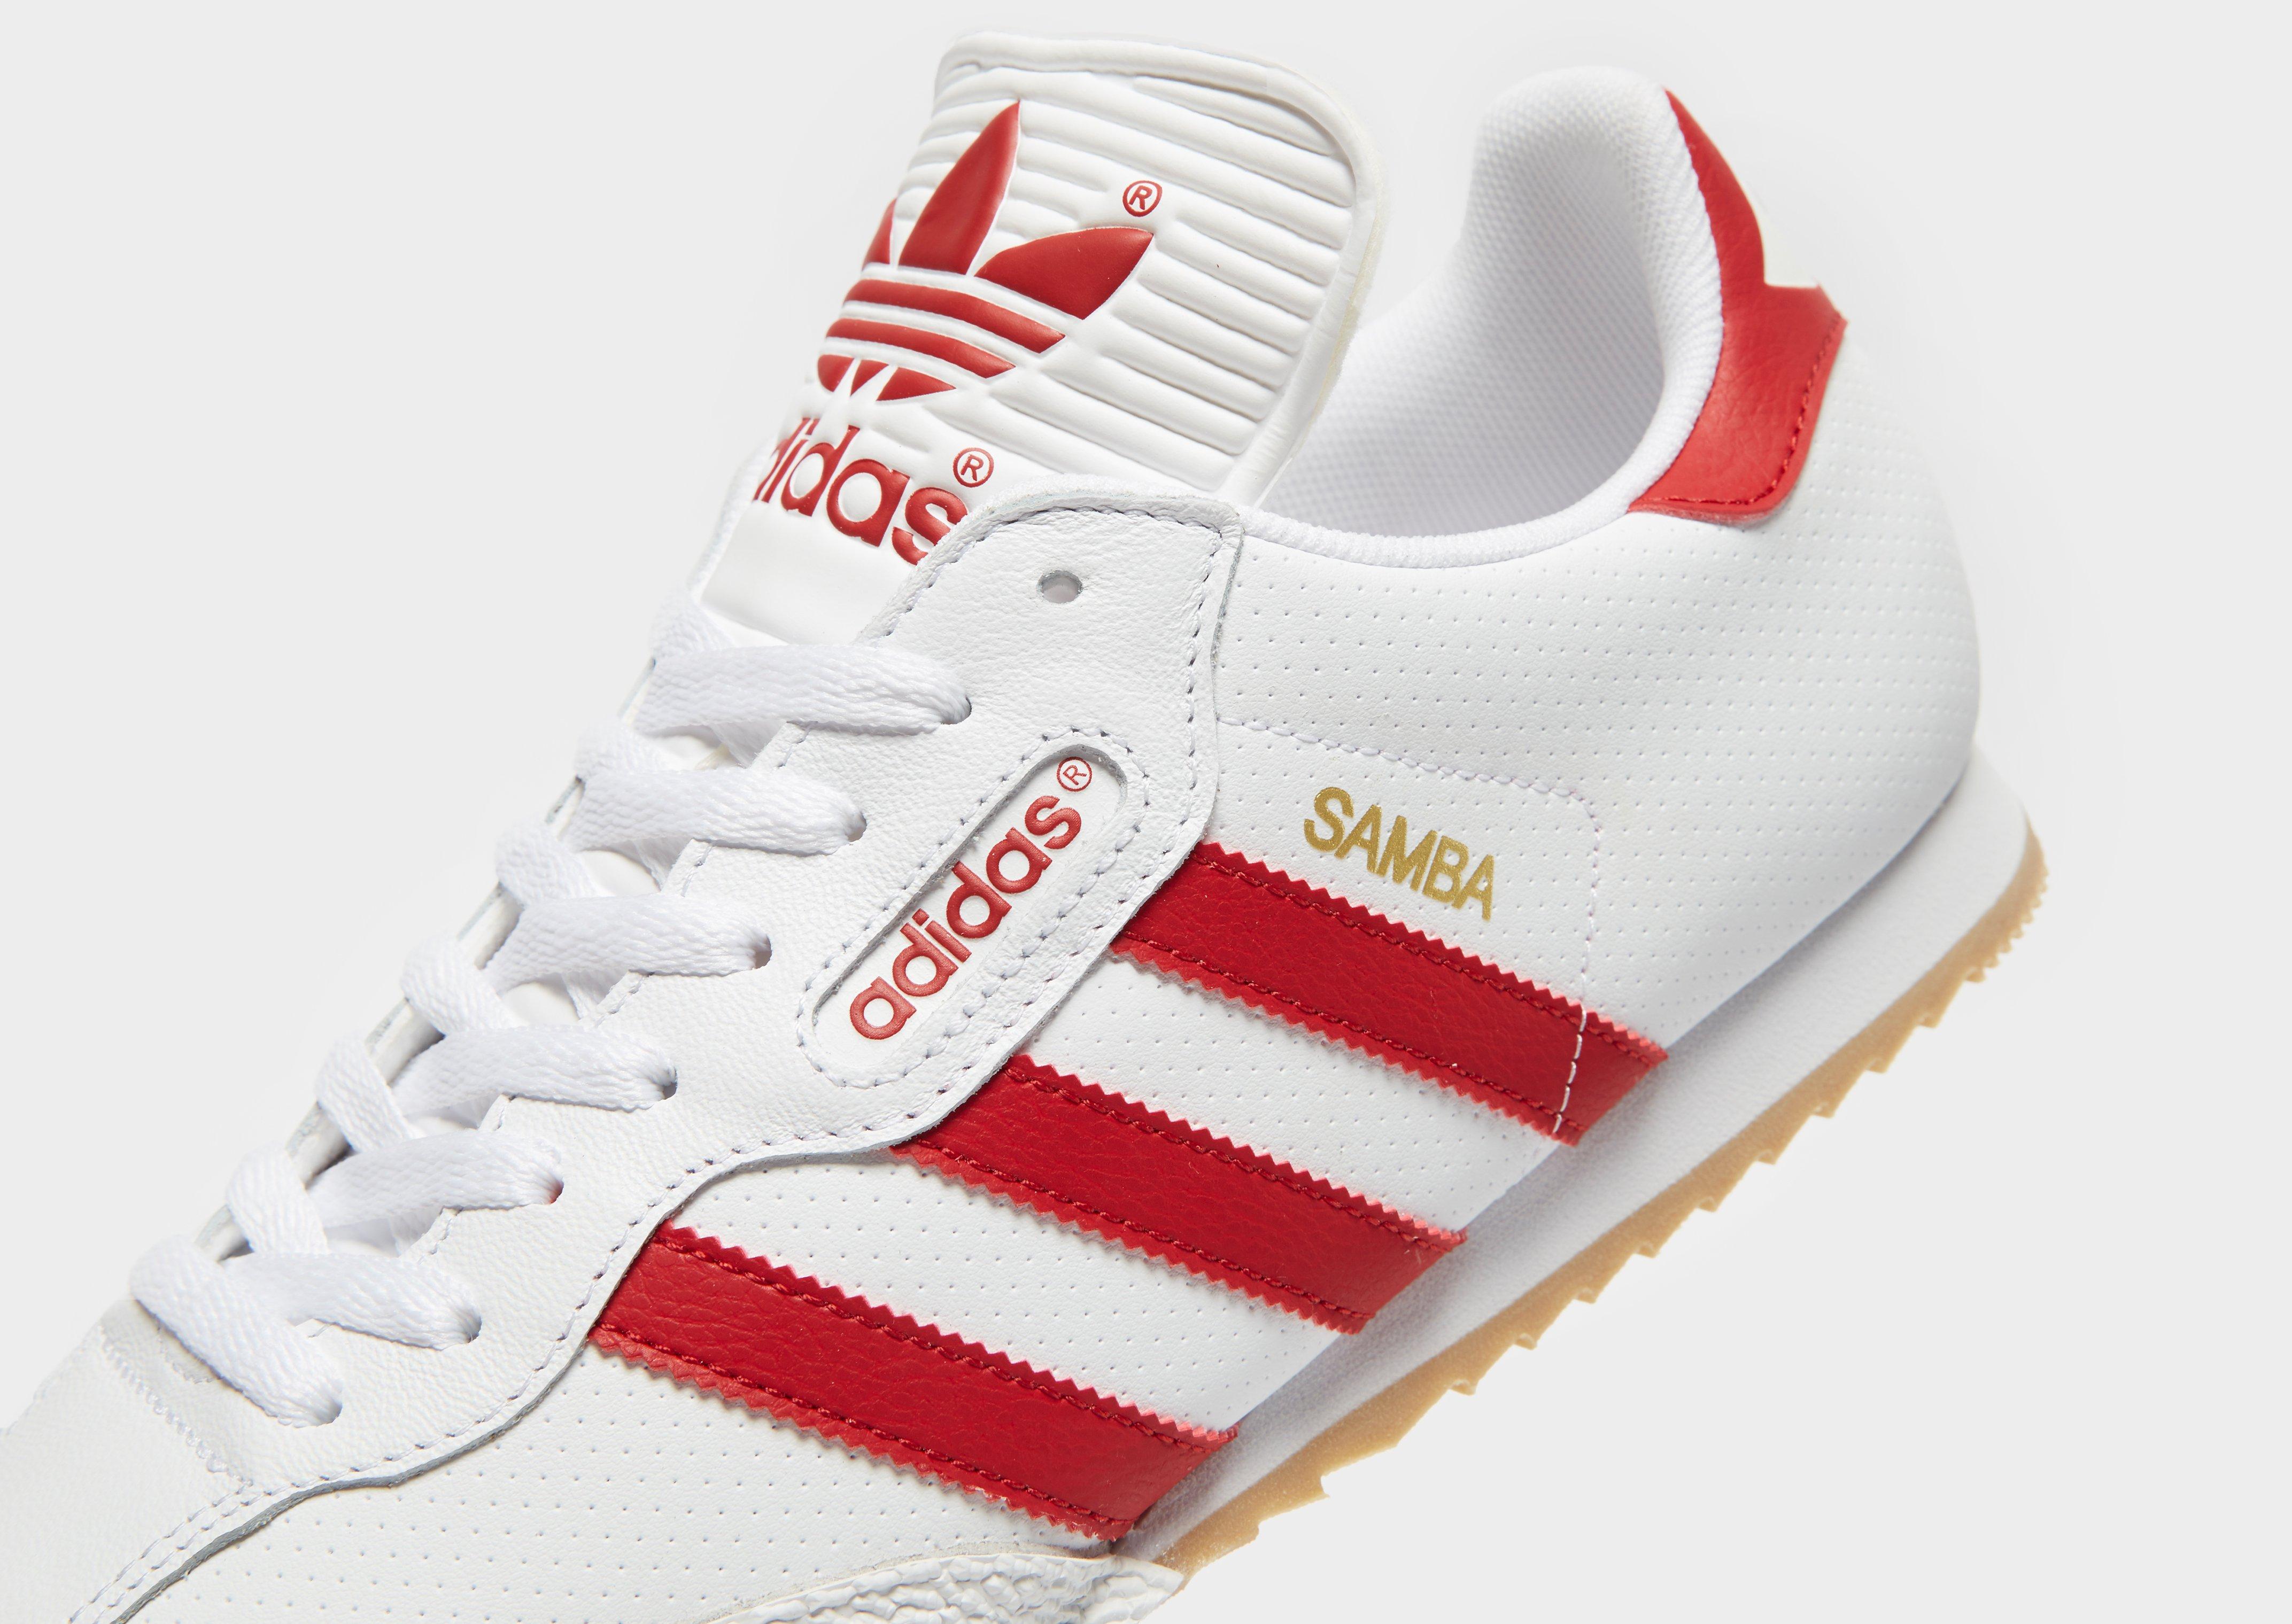 adidas samba super red and white